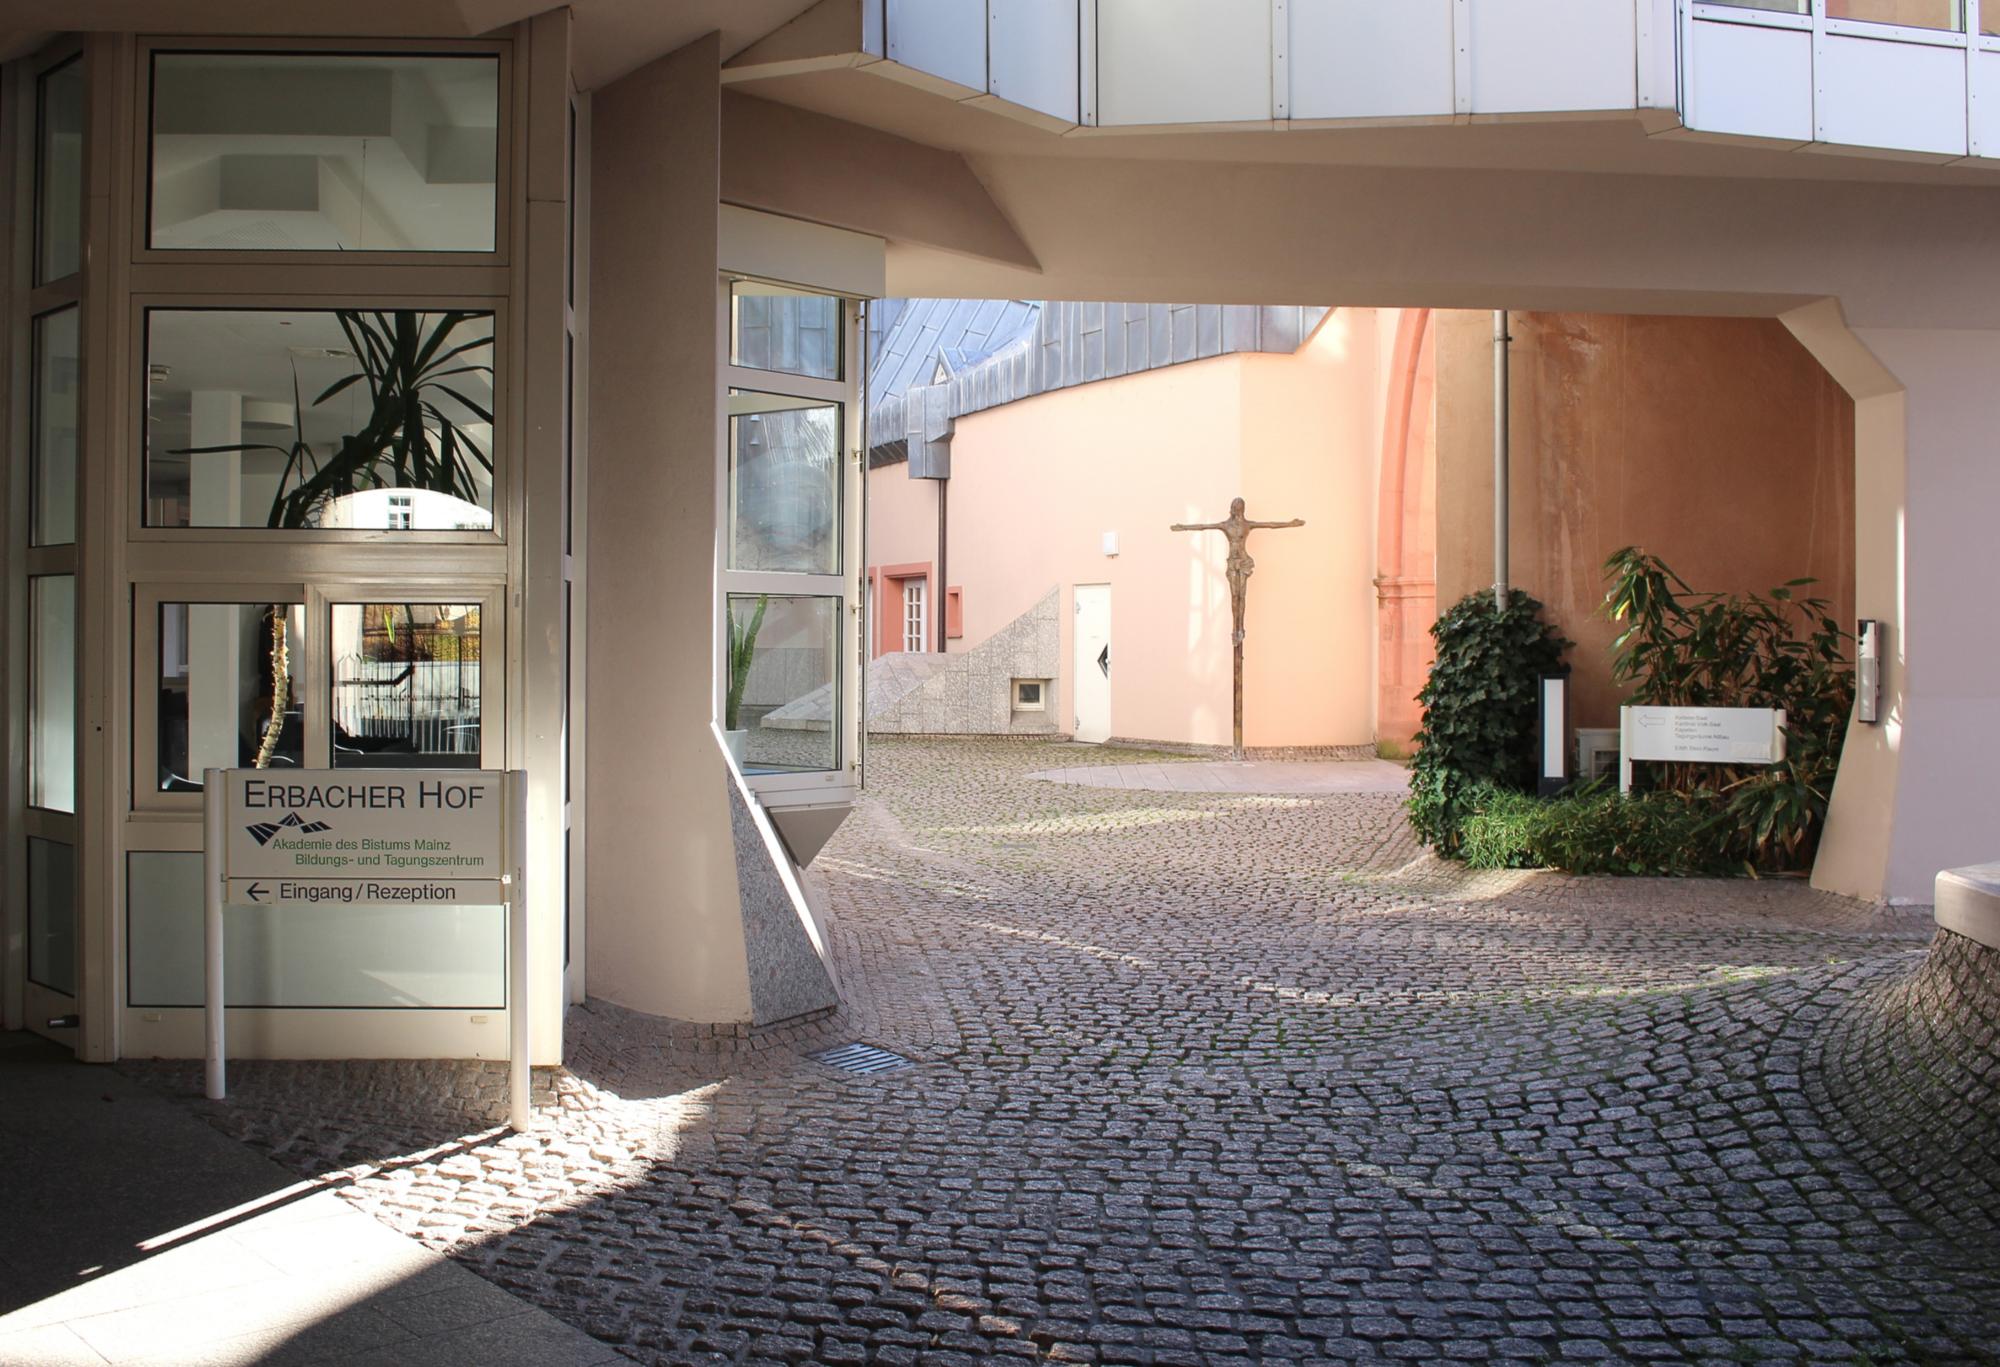 Der Erbacher Hof ist das Bildungs- und Tagungszentrum des Bistums in Mainz. (c) Bistum Mainz / Blum